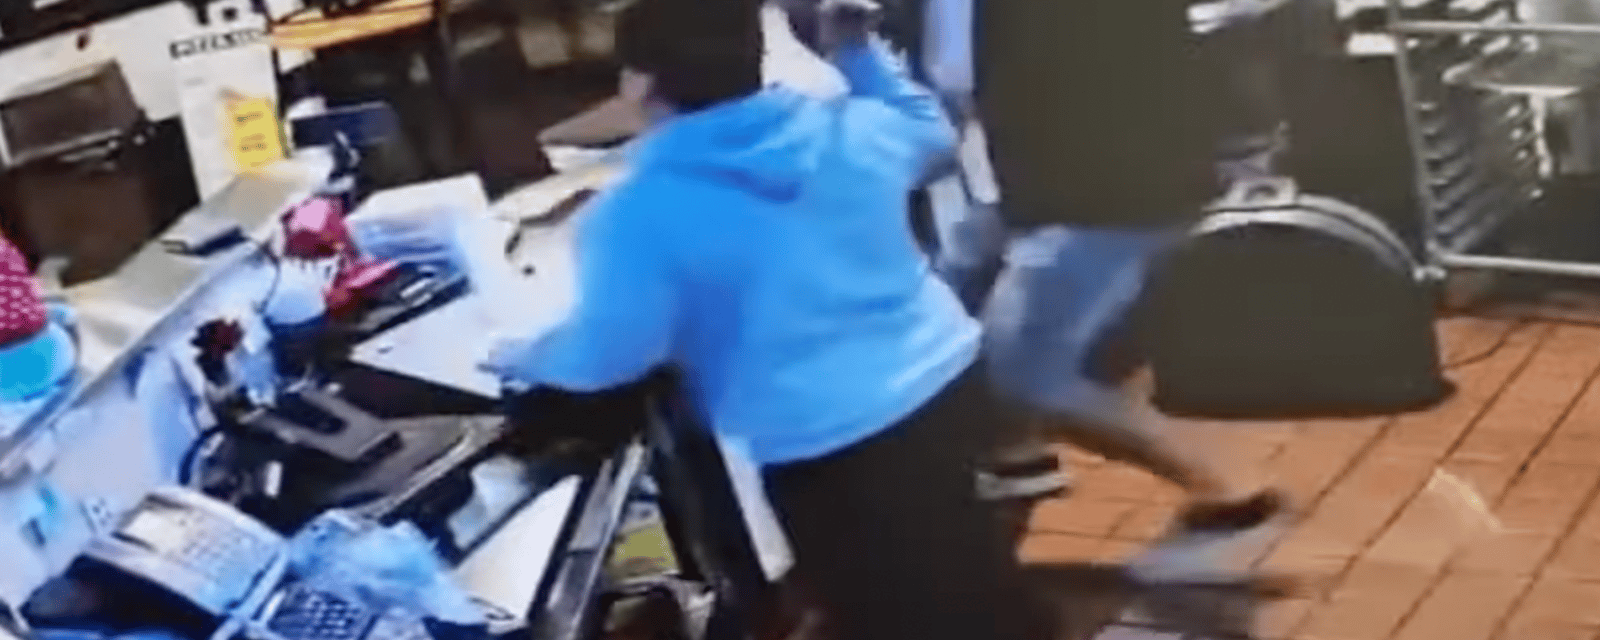 Des employés d'une pizzeria font fuir un voleur à coups de marteau et de poubelle